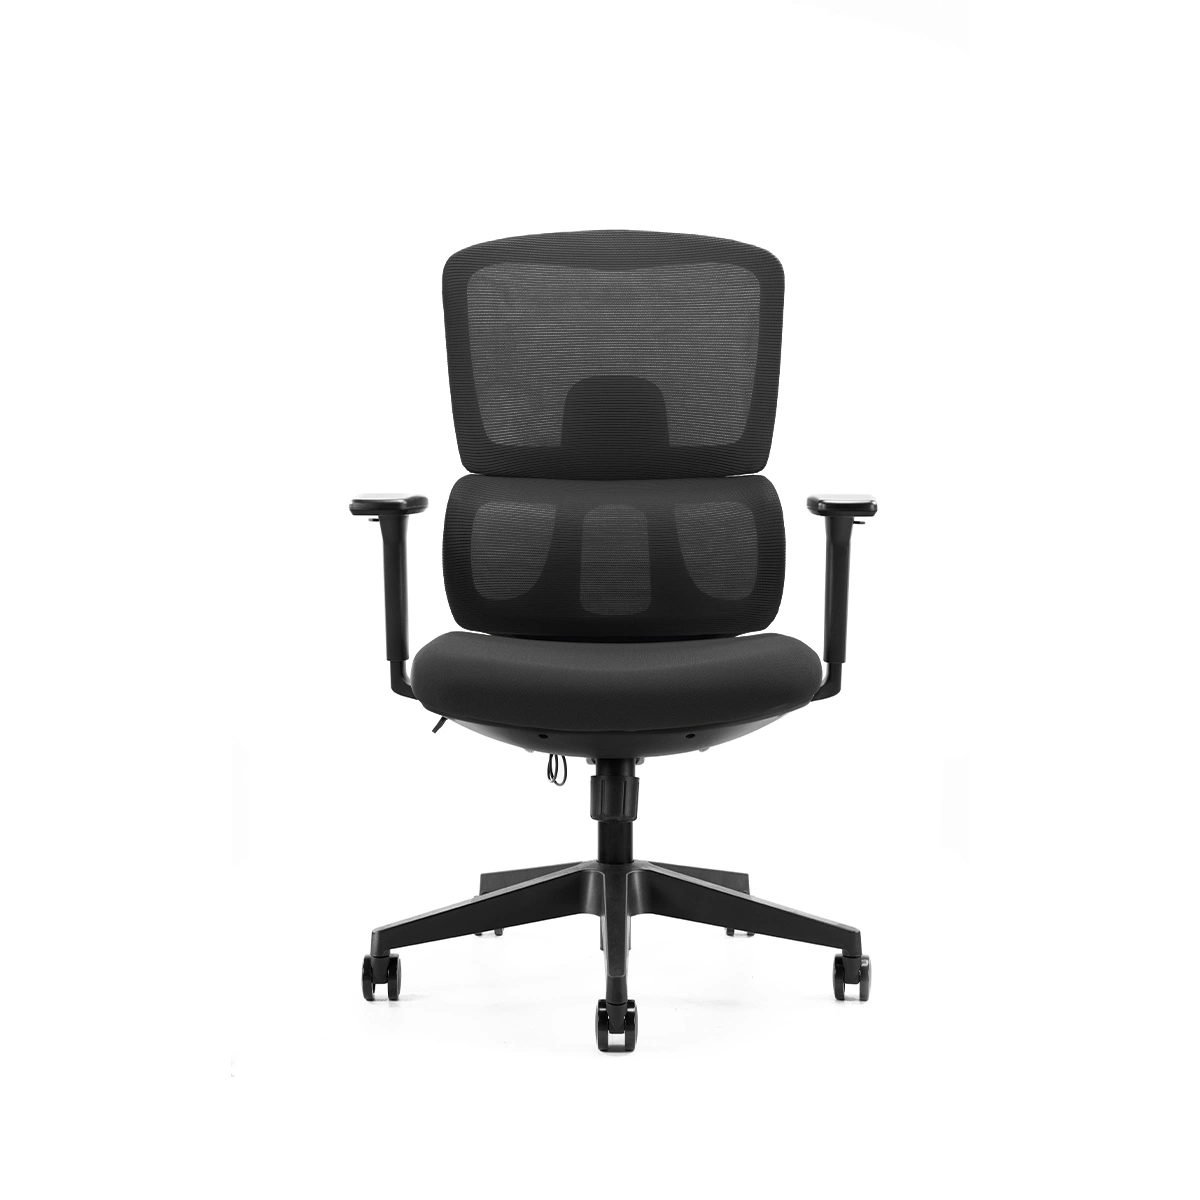 La mejor comodidad moderna de mediados de vuelta Armless regulable en altura de trabajo giratoria ergonómica y la elaboración de sillas de oficina